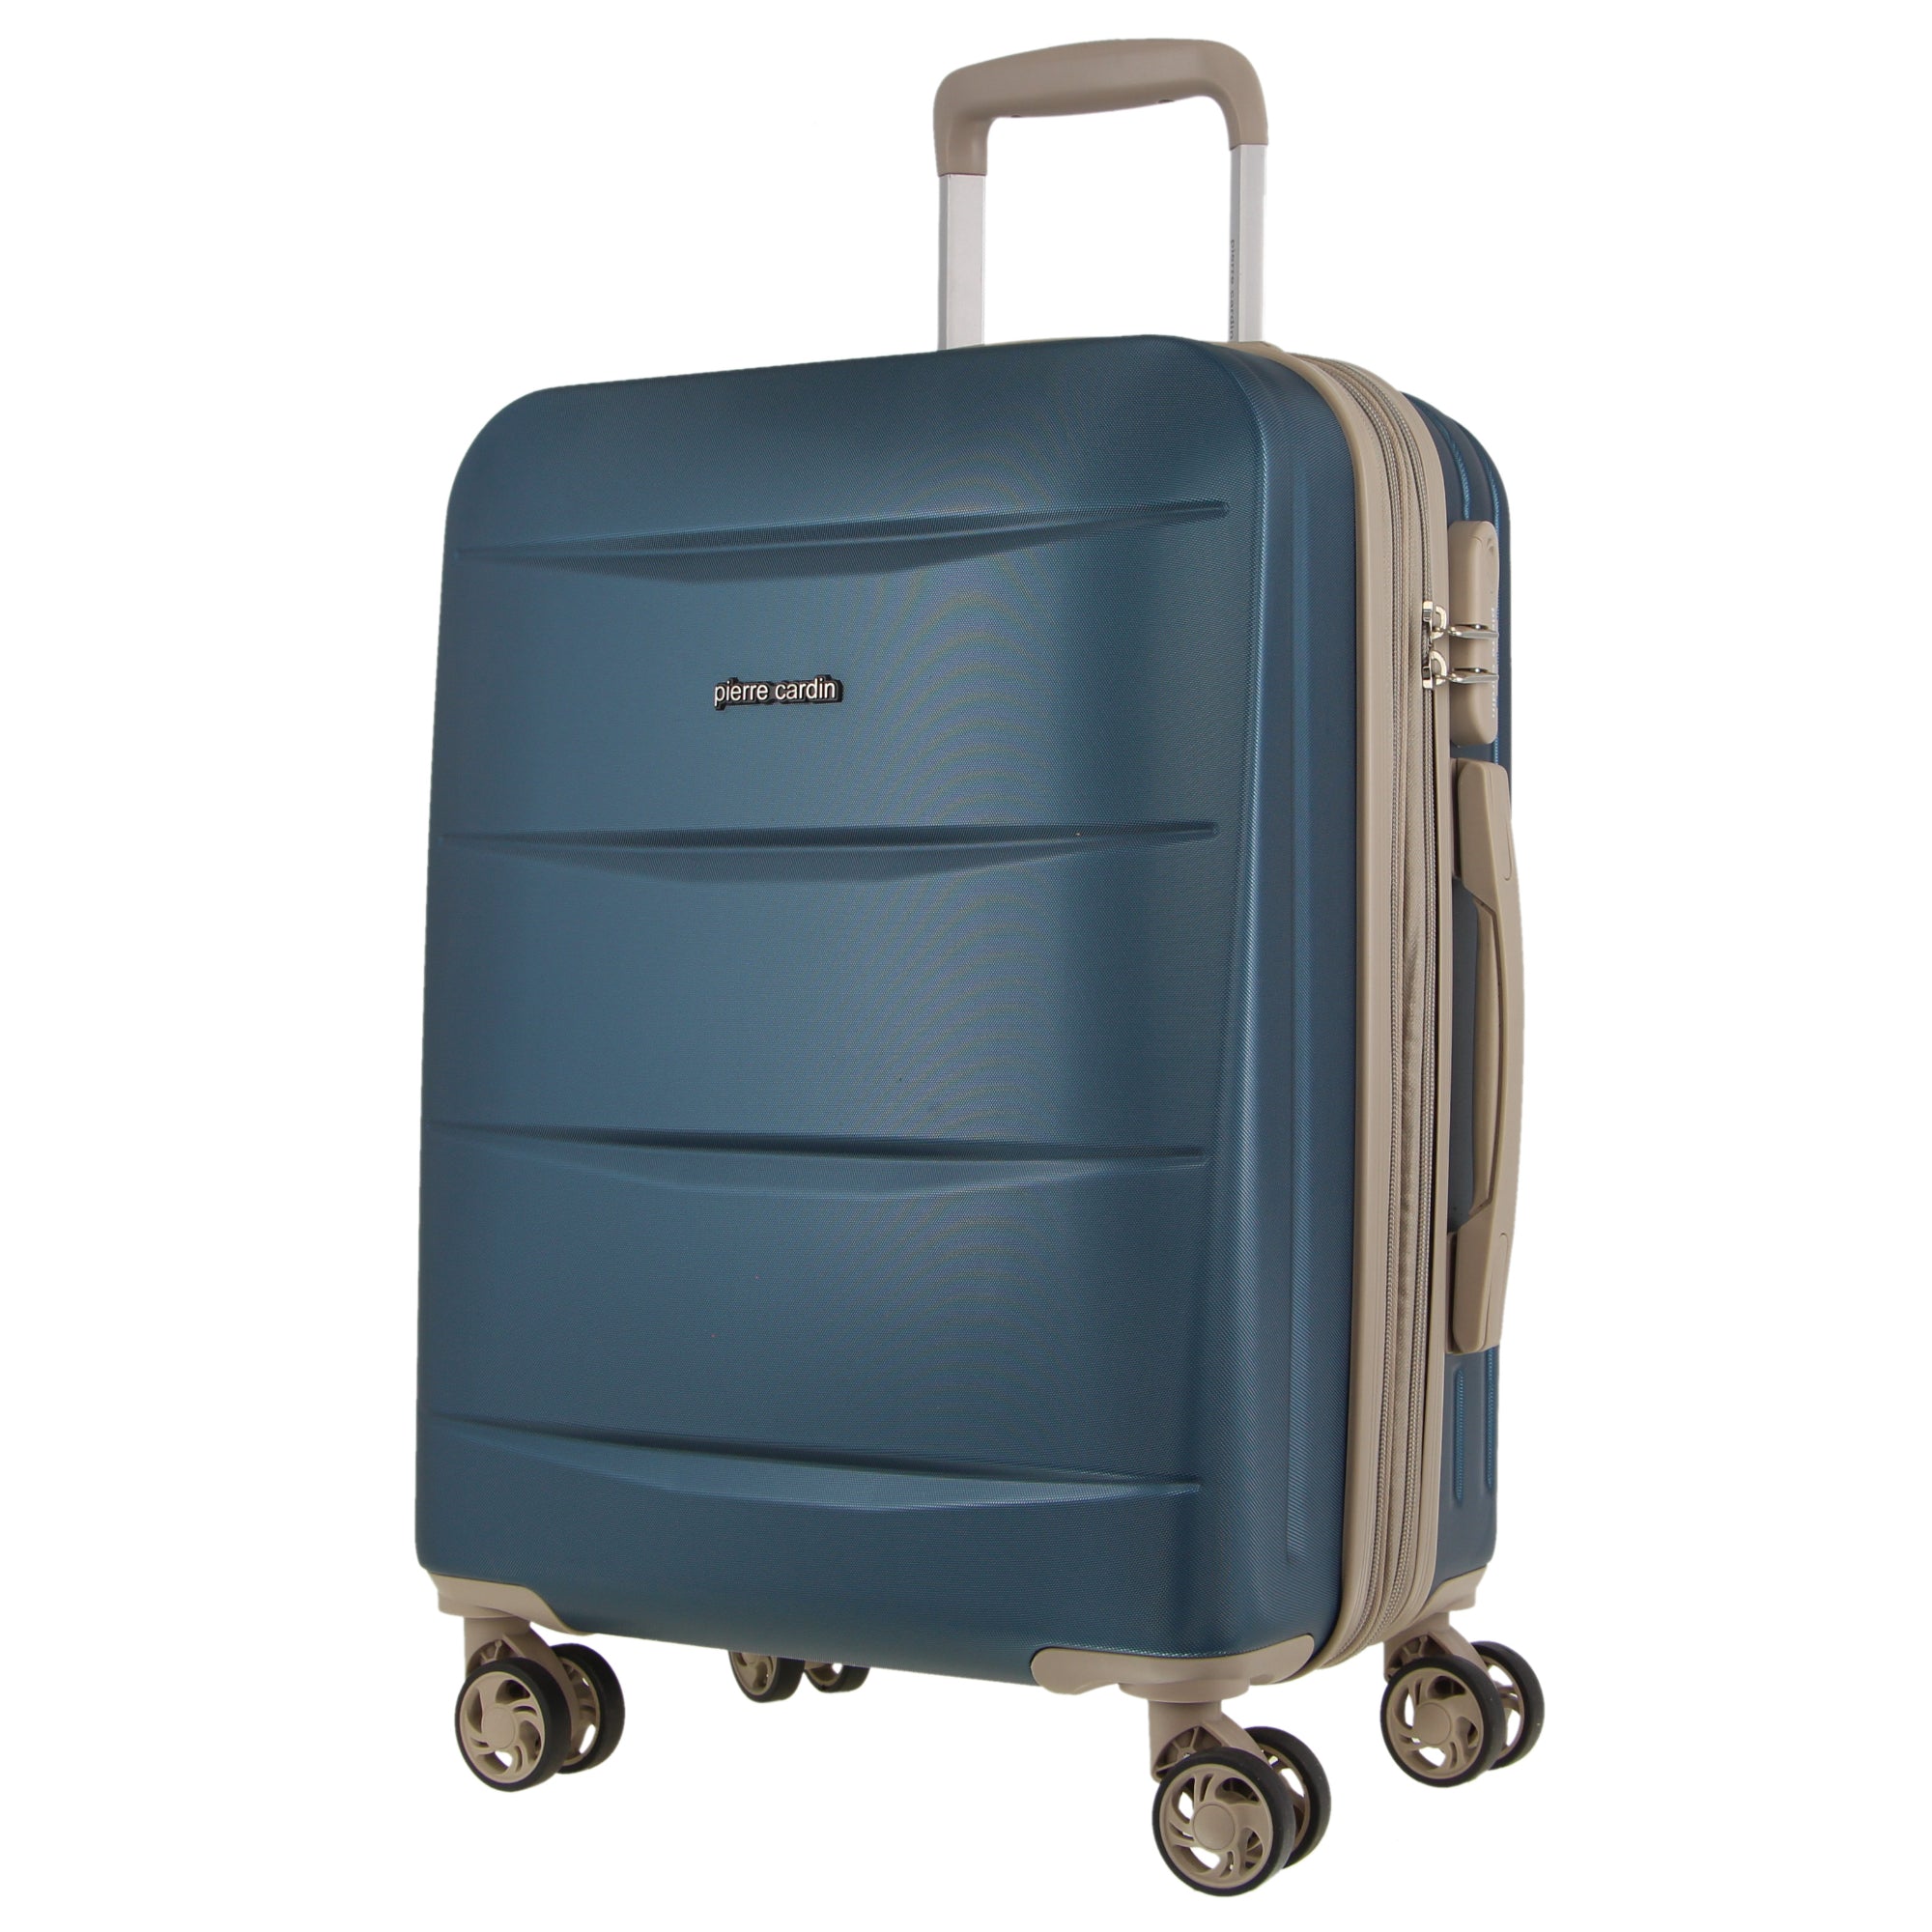 Pierre Cardin 54cm Cabin Hard-Shell Suitcase in Blue